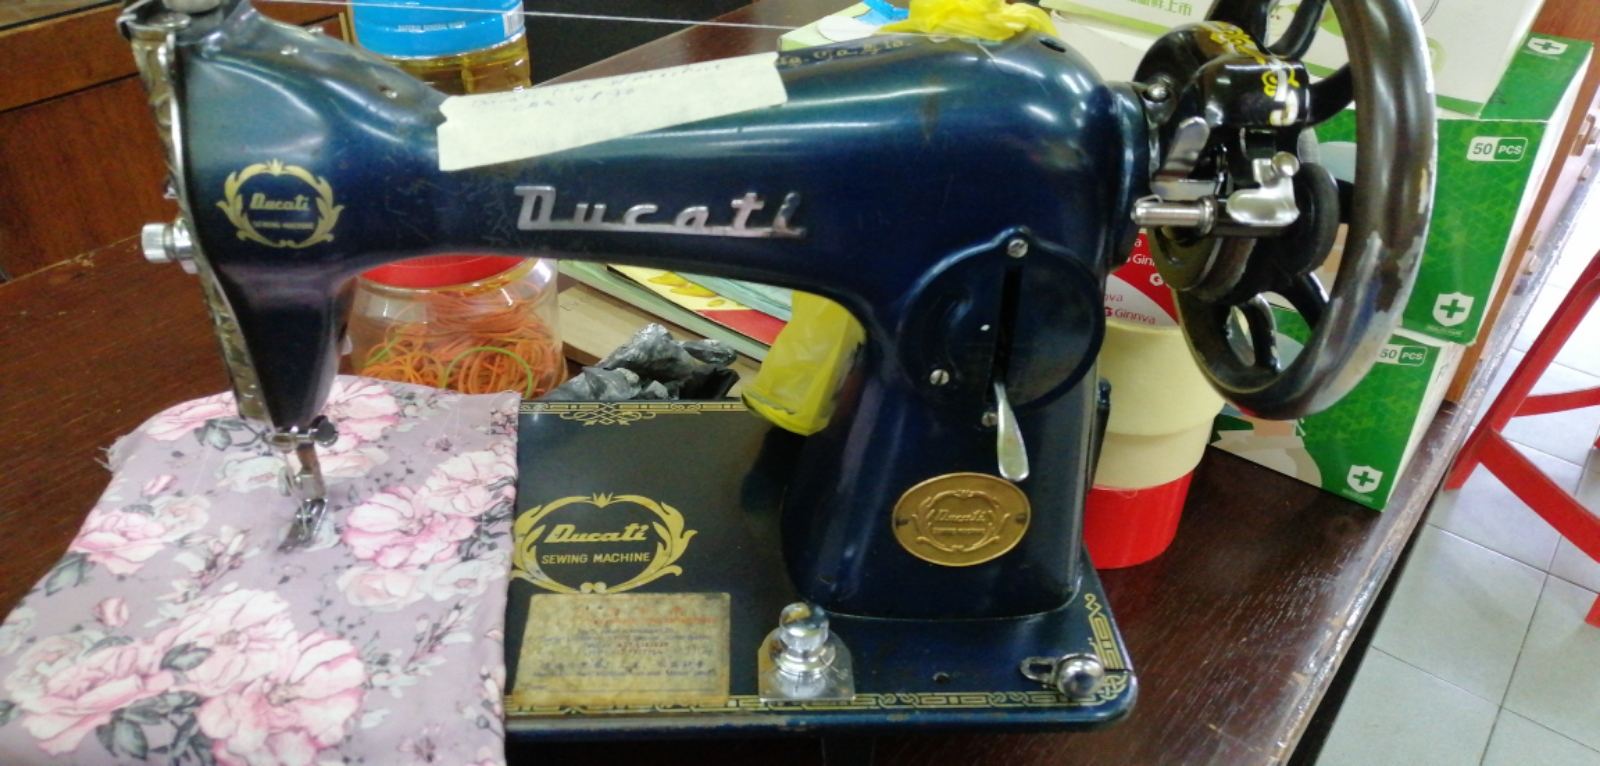 Ducati Antique Sewing Machine 